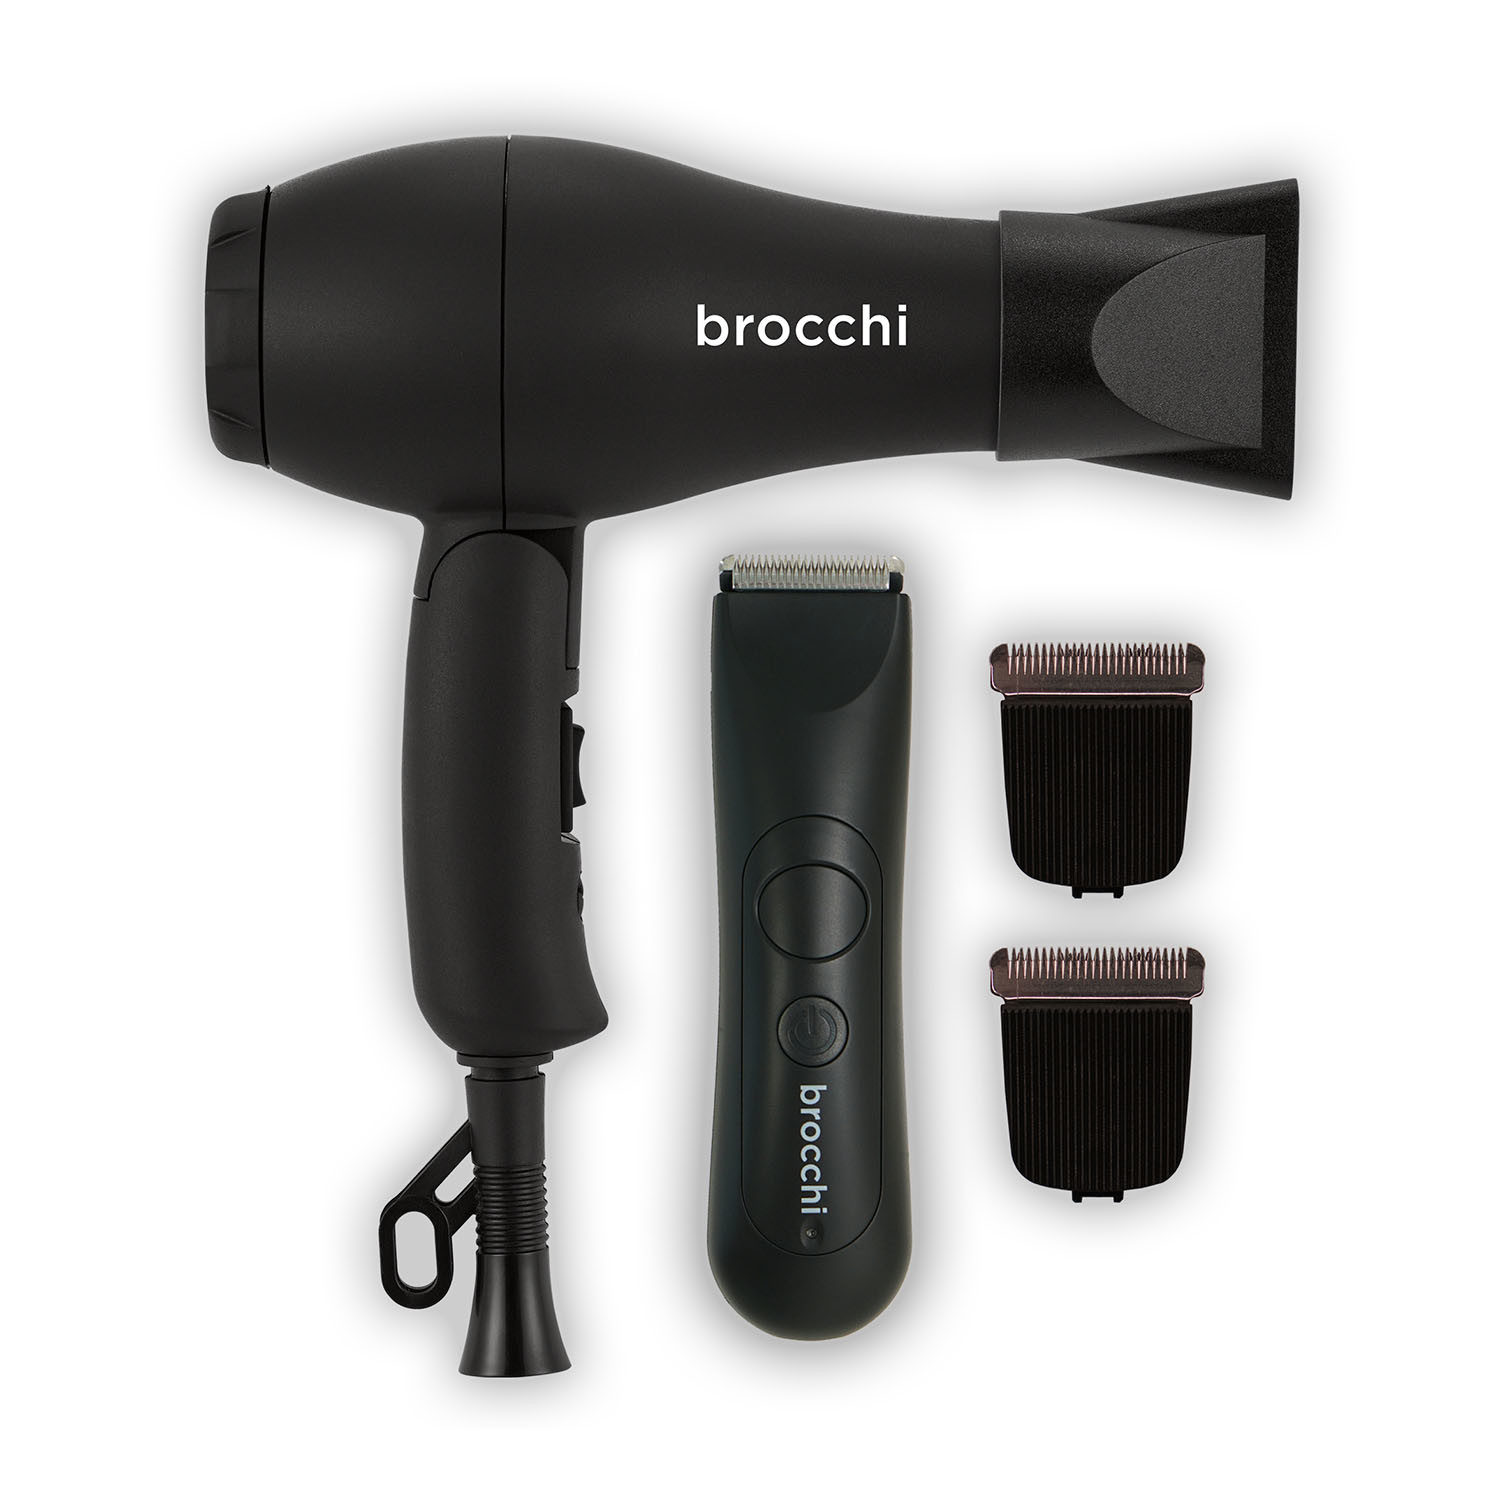 brocchi body hair trimmer